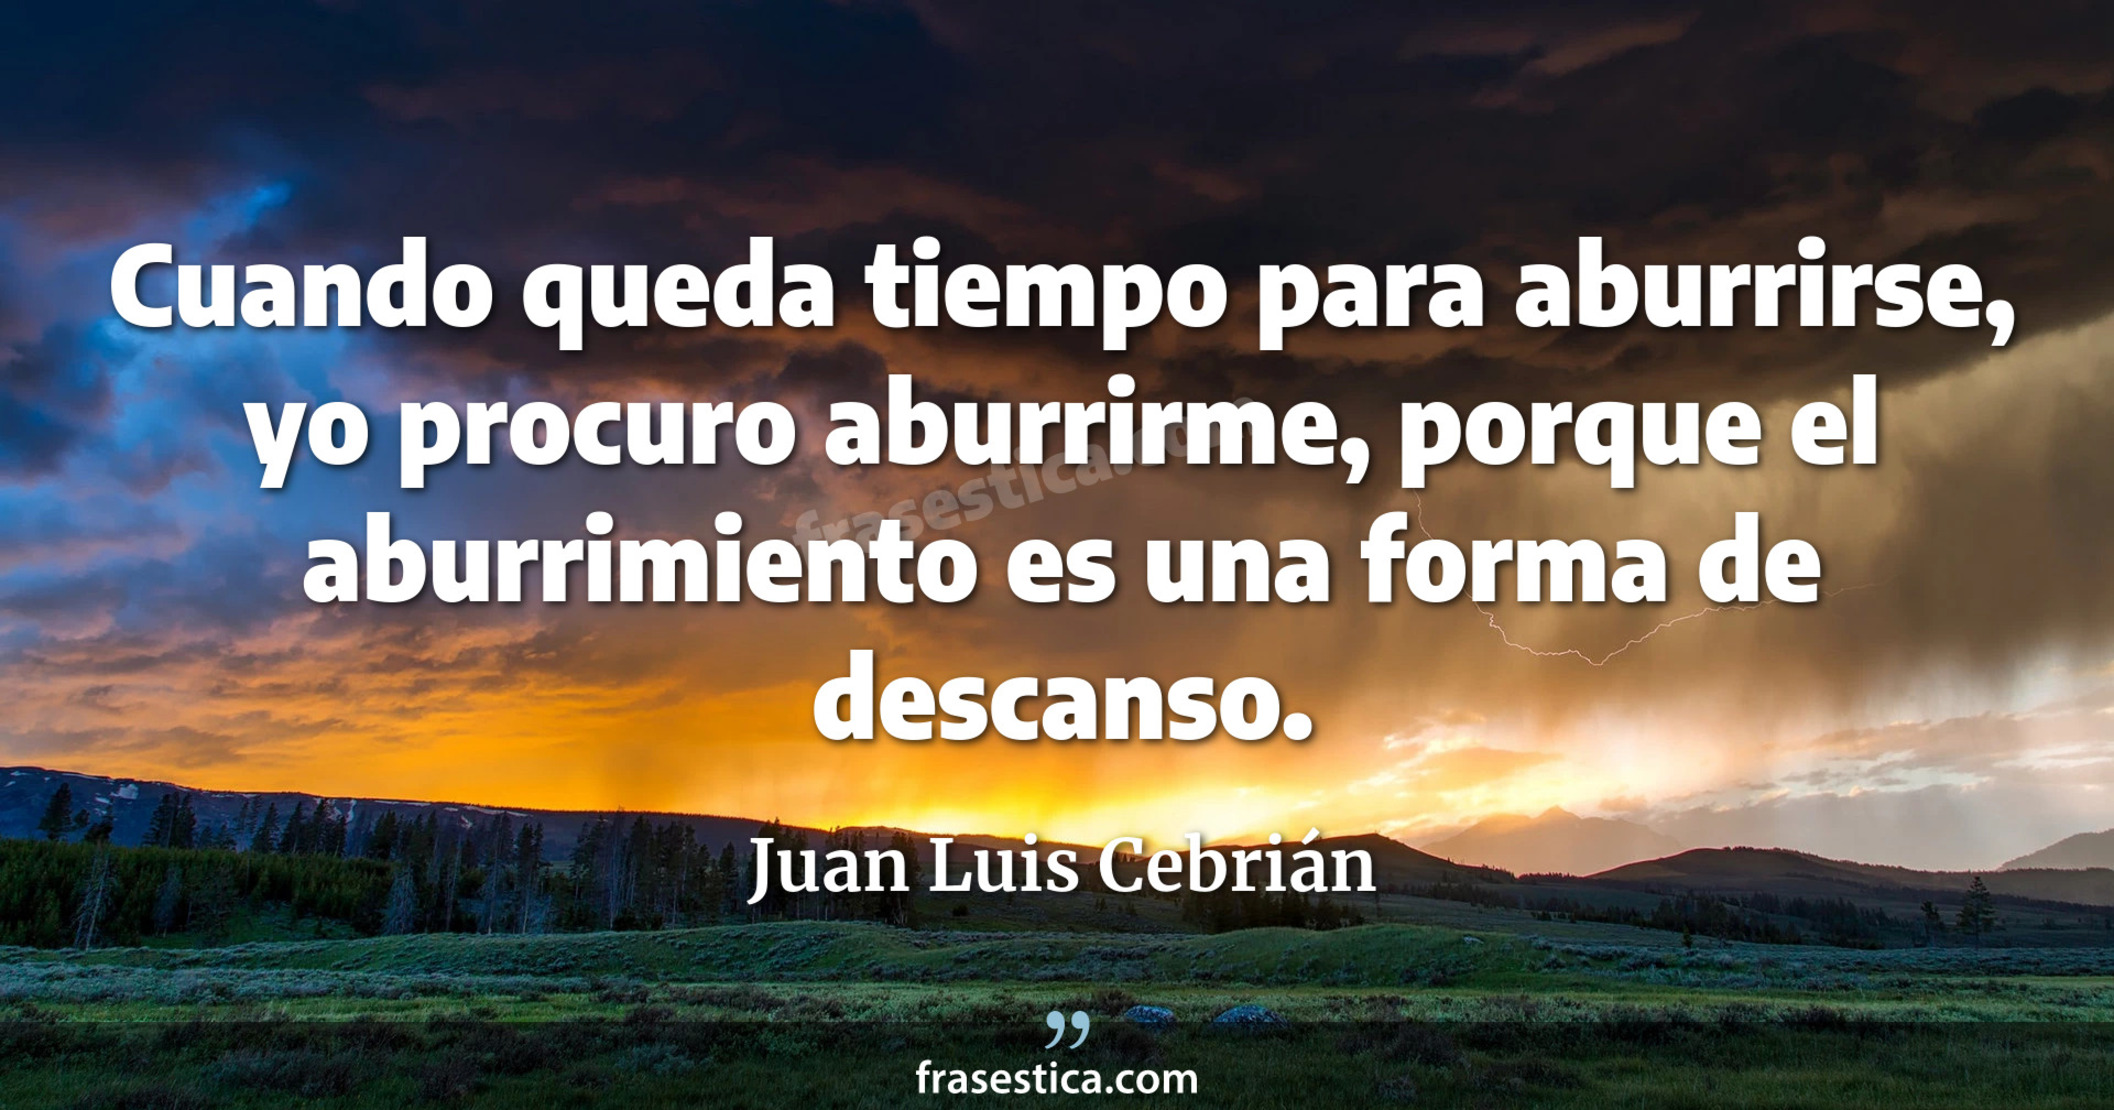 Cuando queda tiempo para aburrirse, yo procuro aburrirme, porque el aburrimiento es una forma de descanso. - Juan Luis Cebrián